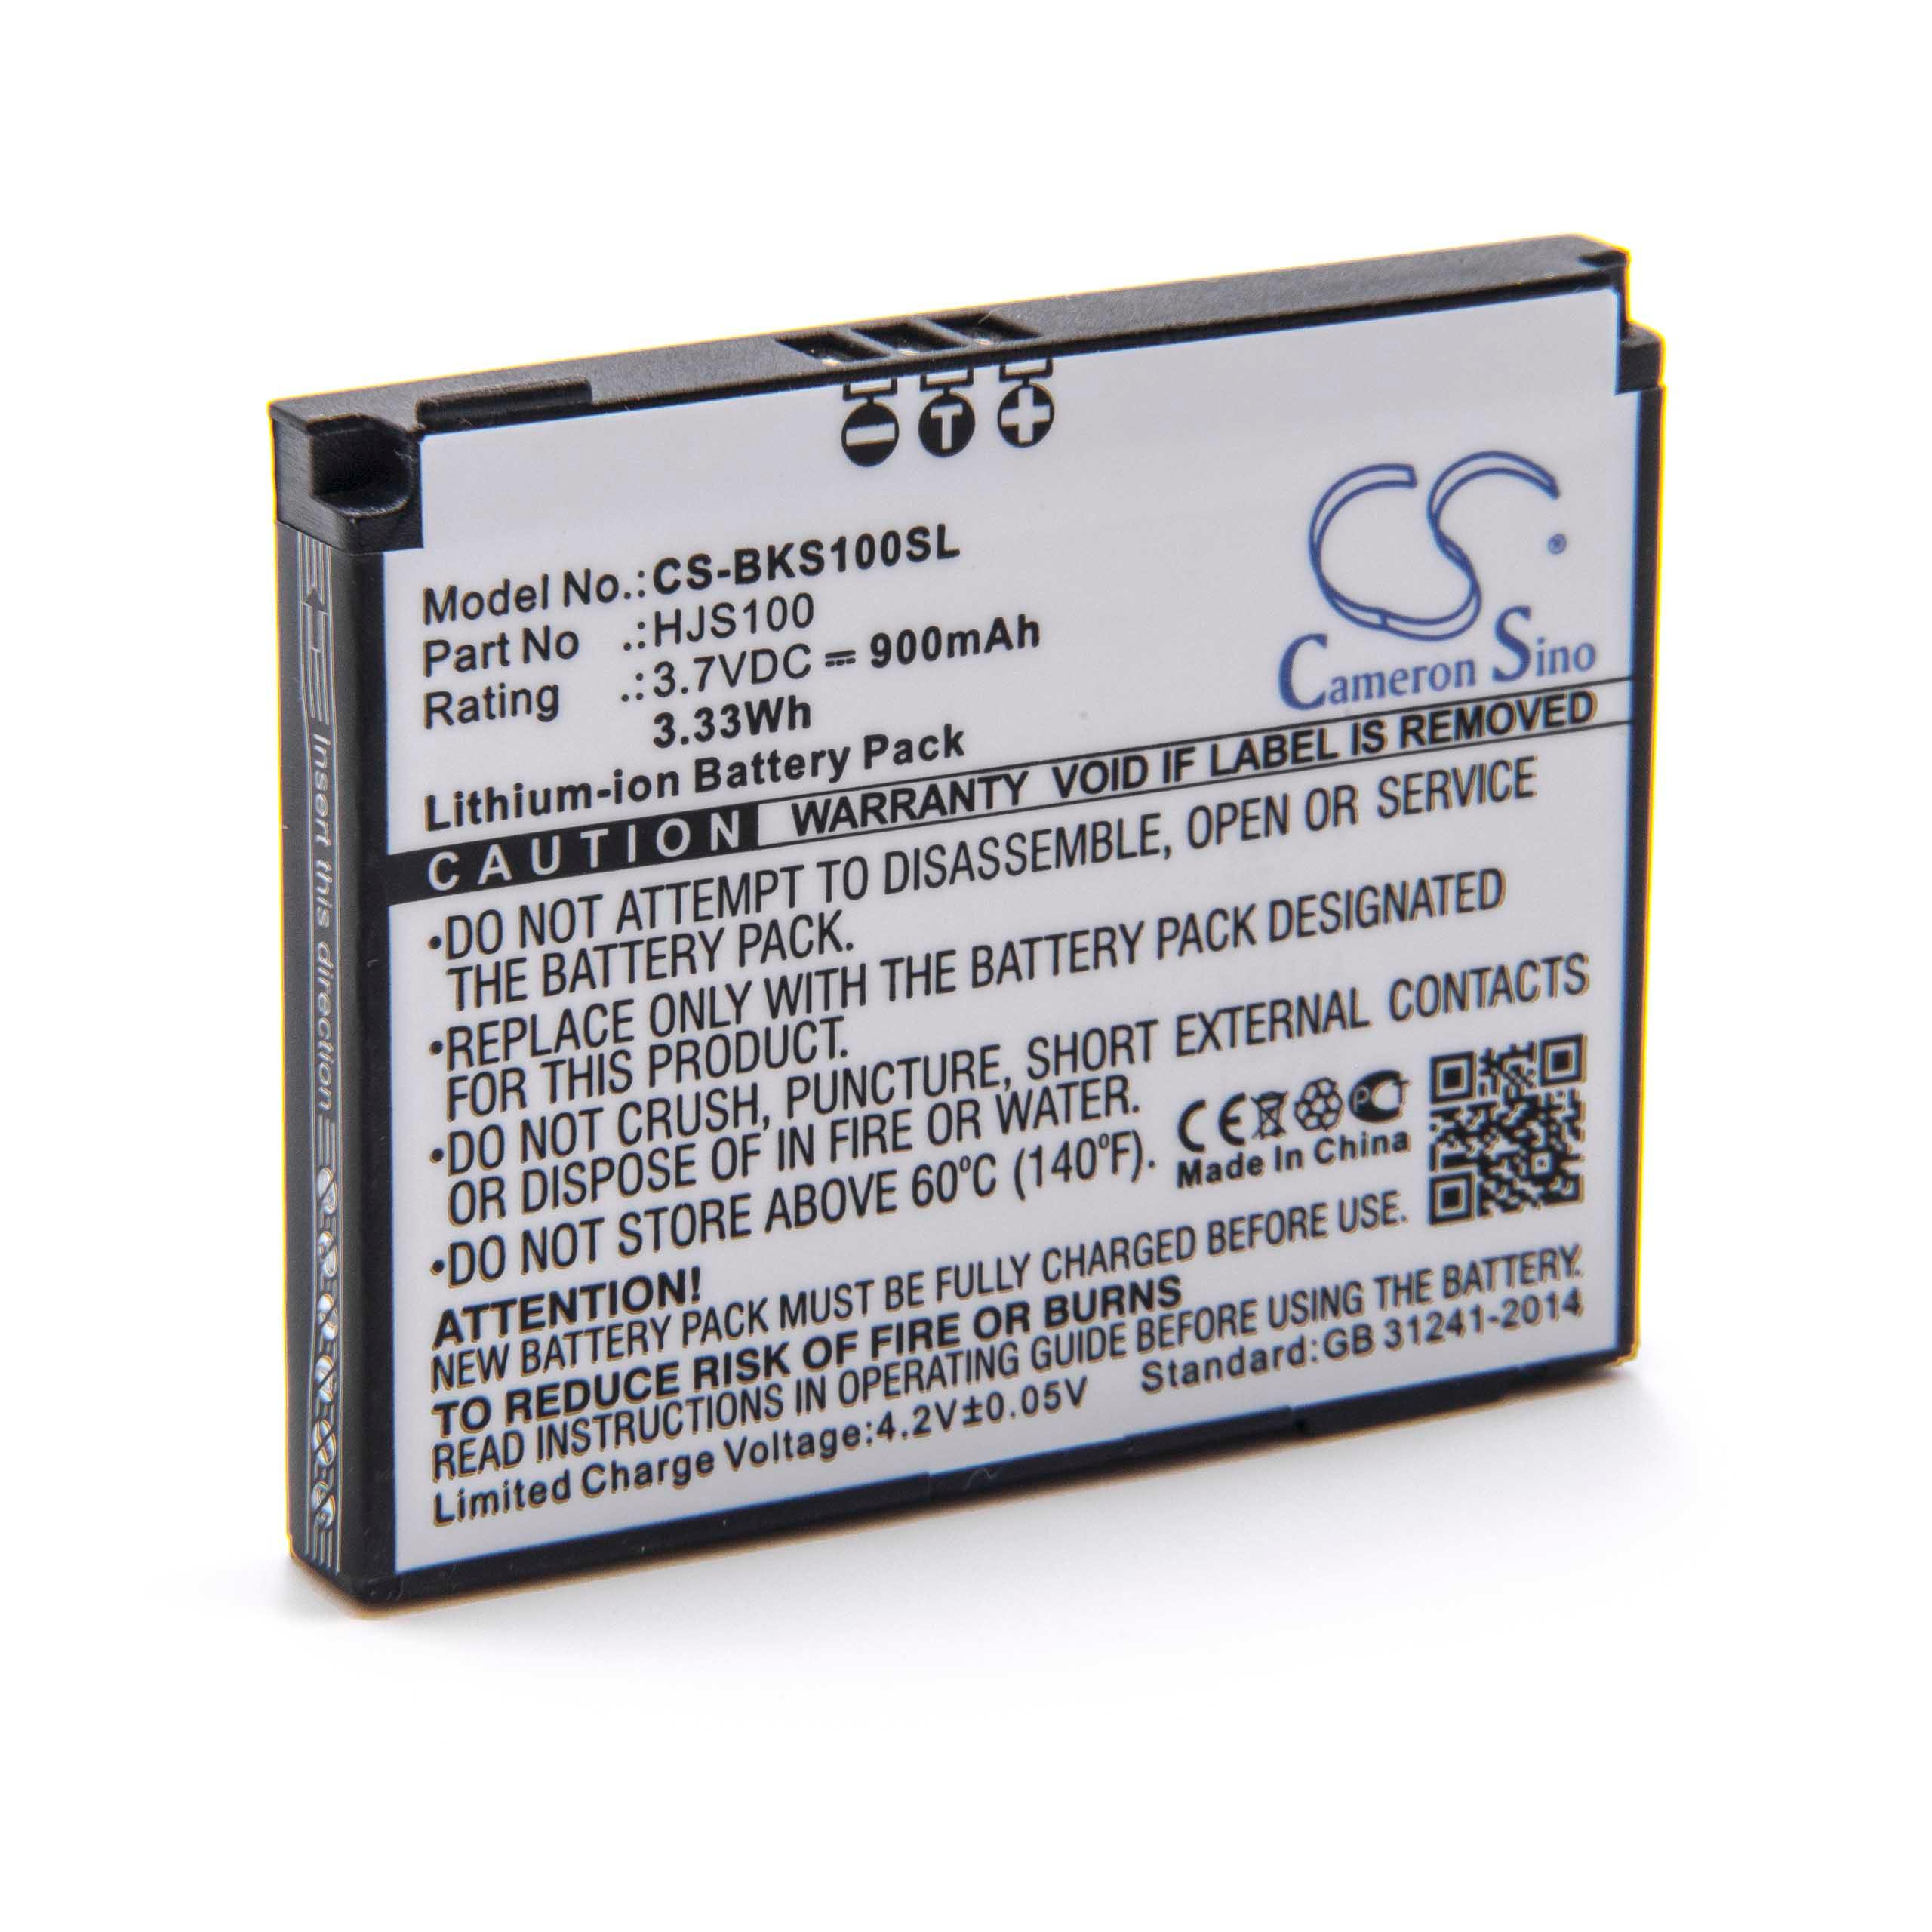 Batterie remplace Becker 338937010208 pour navigation GPS - 900mAh 3,7V Li-ion